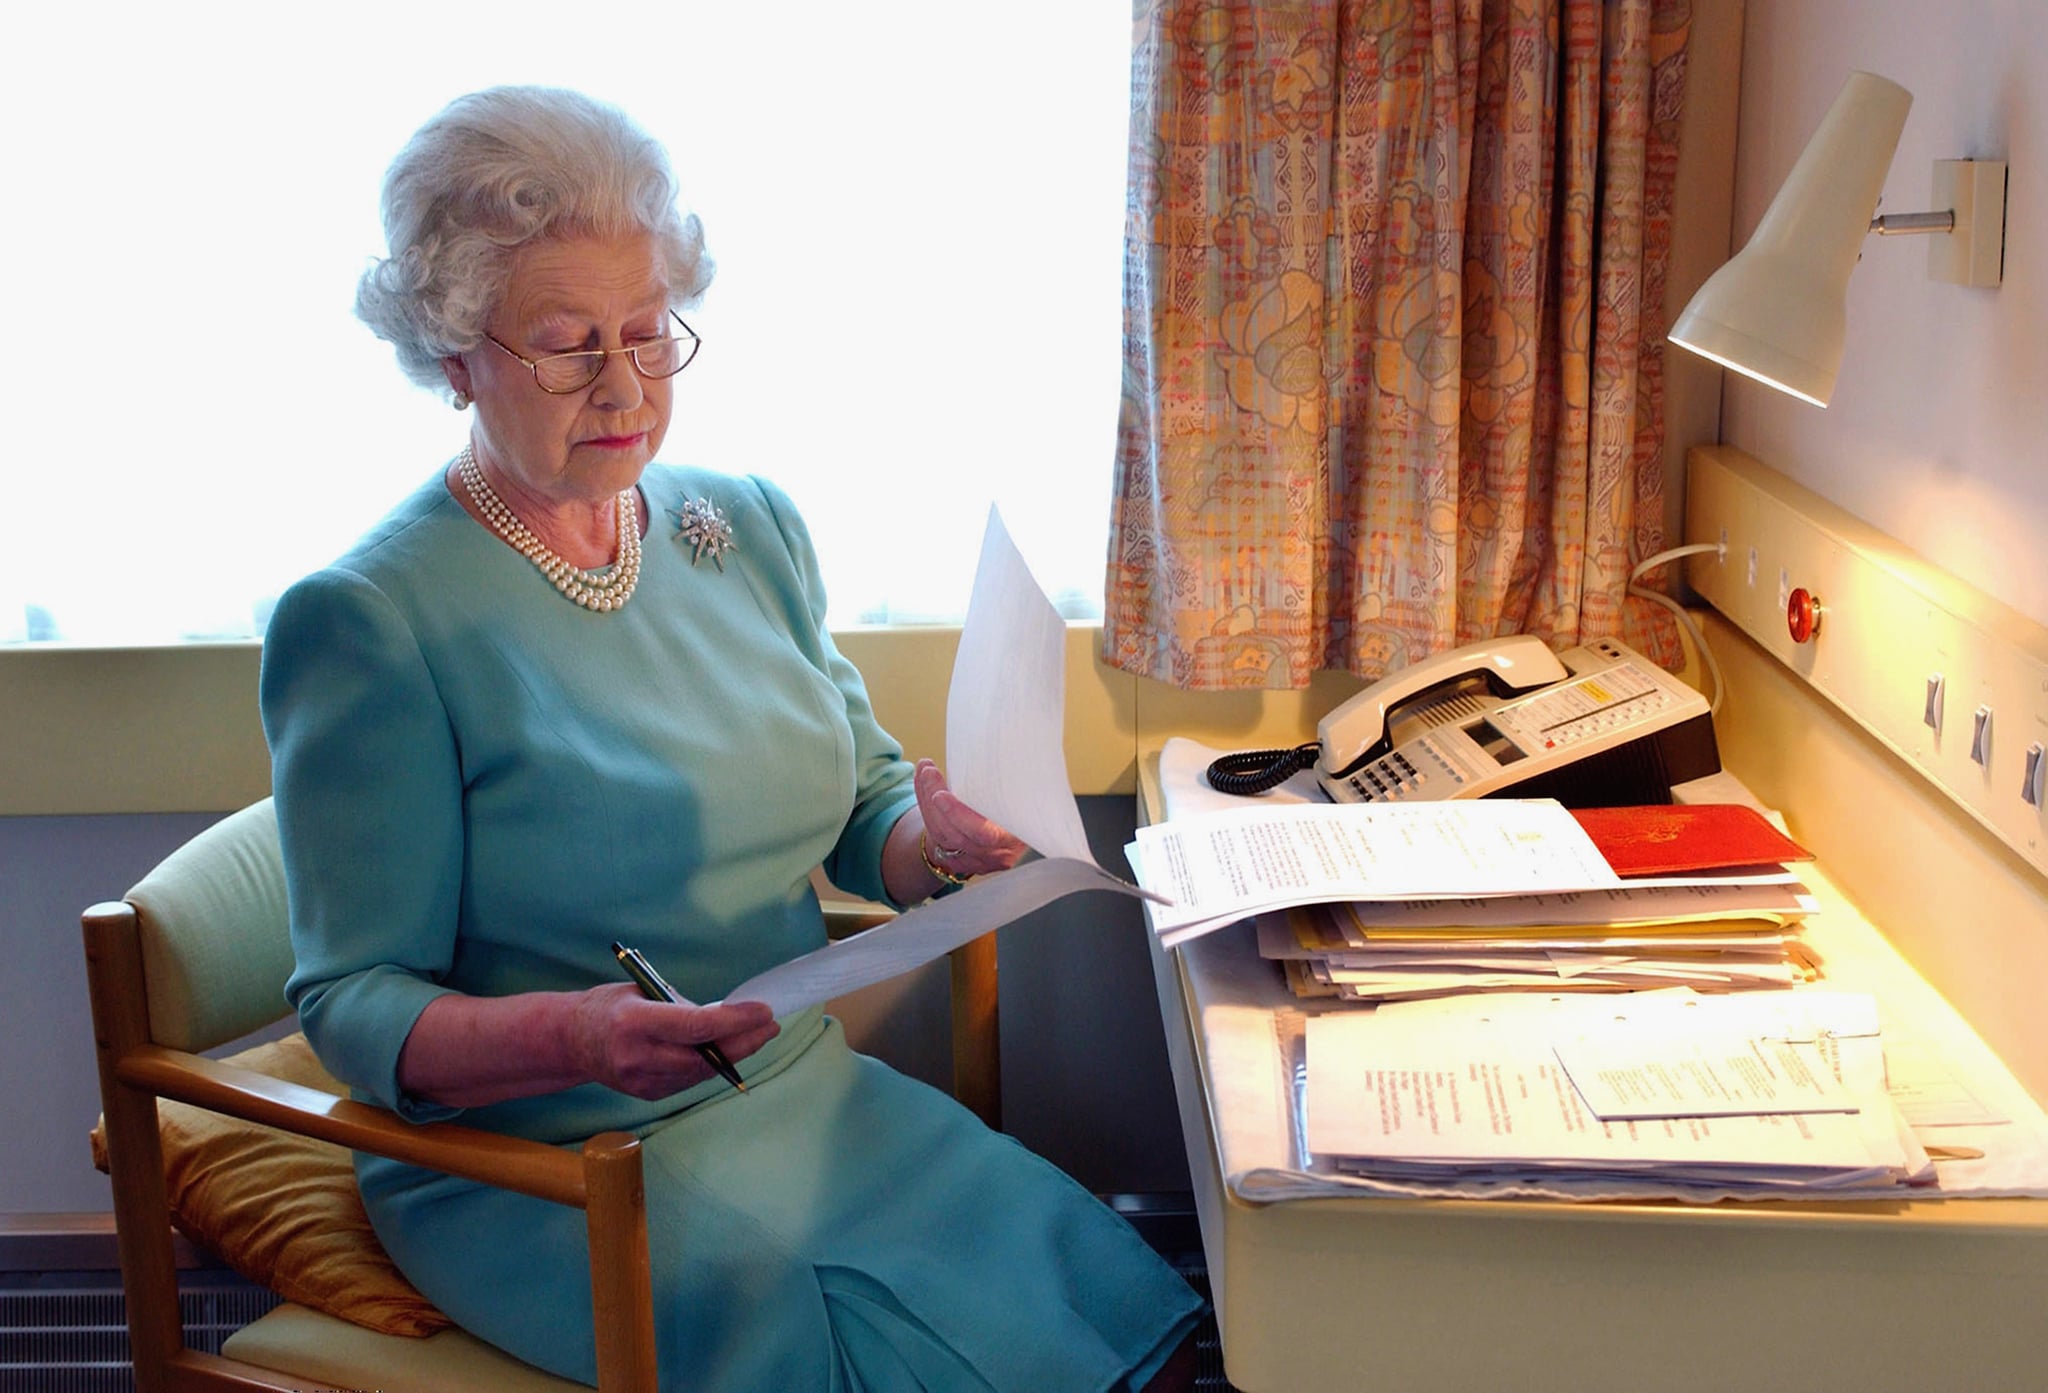 Queen Elizabeth II reviews papers on her train in 2002